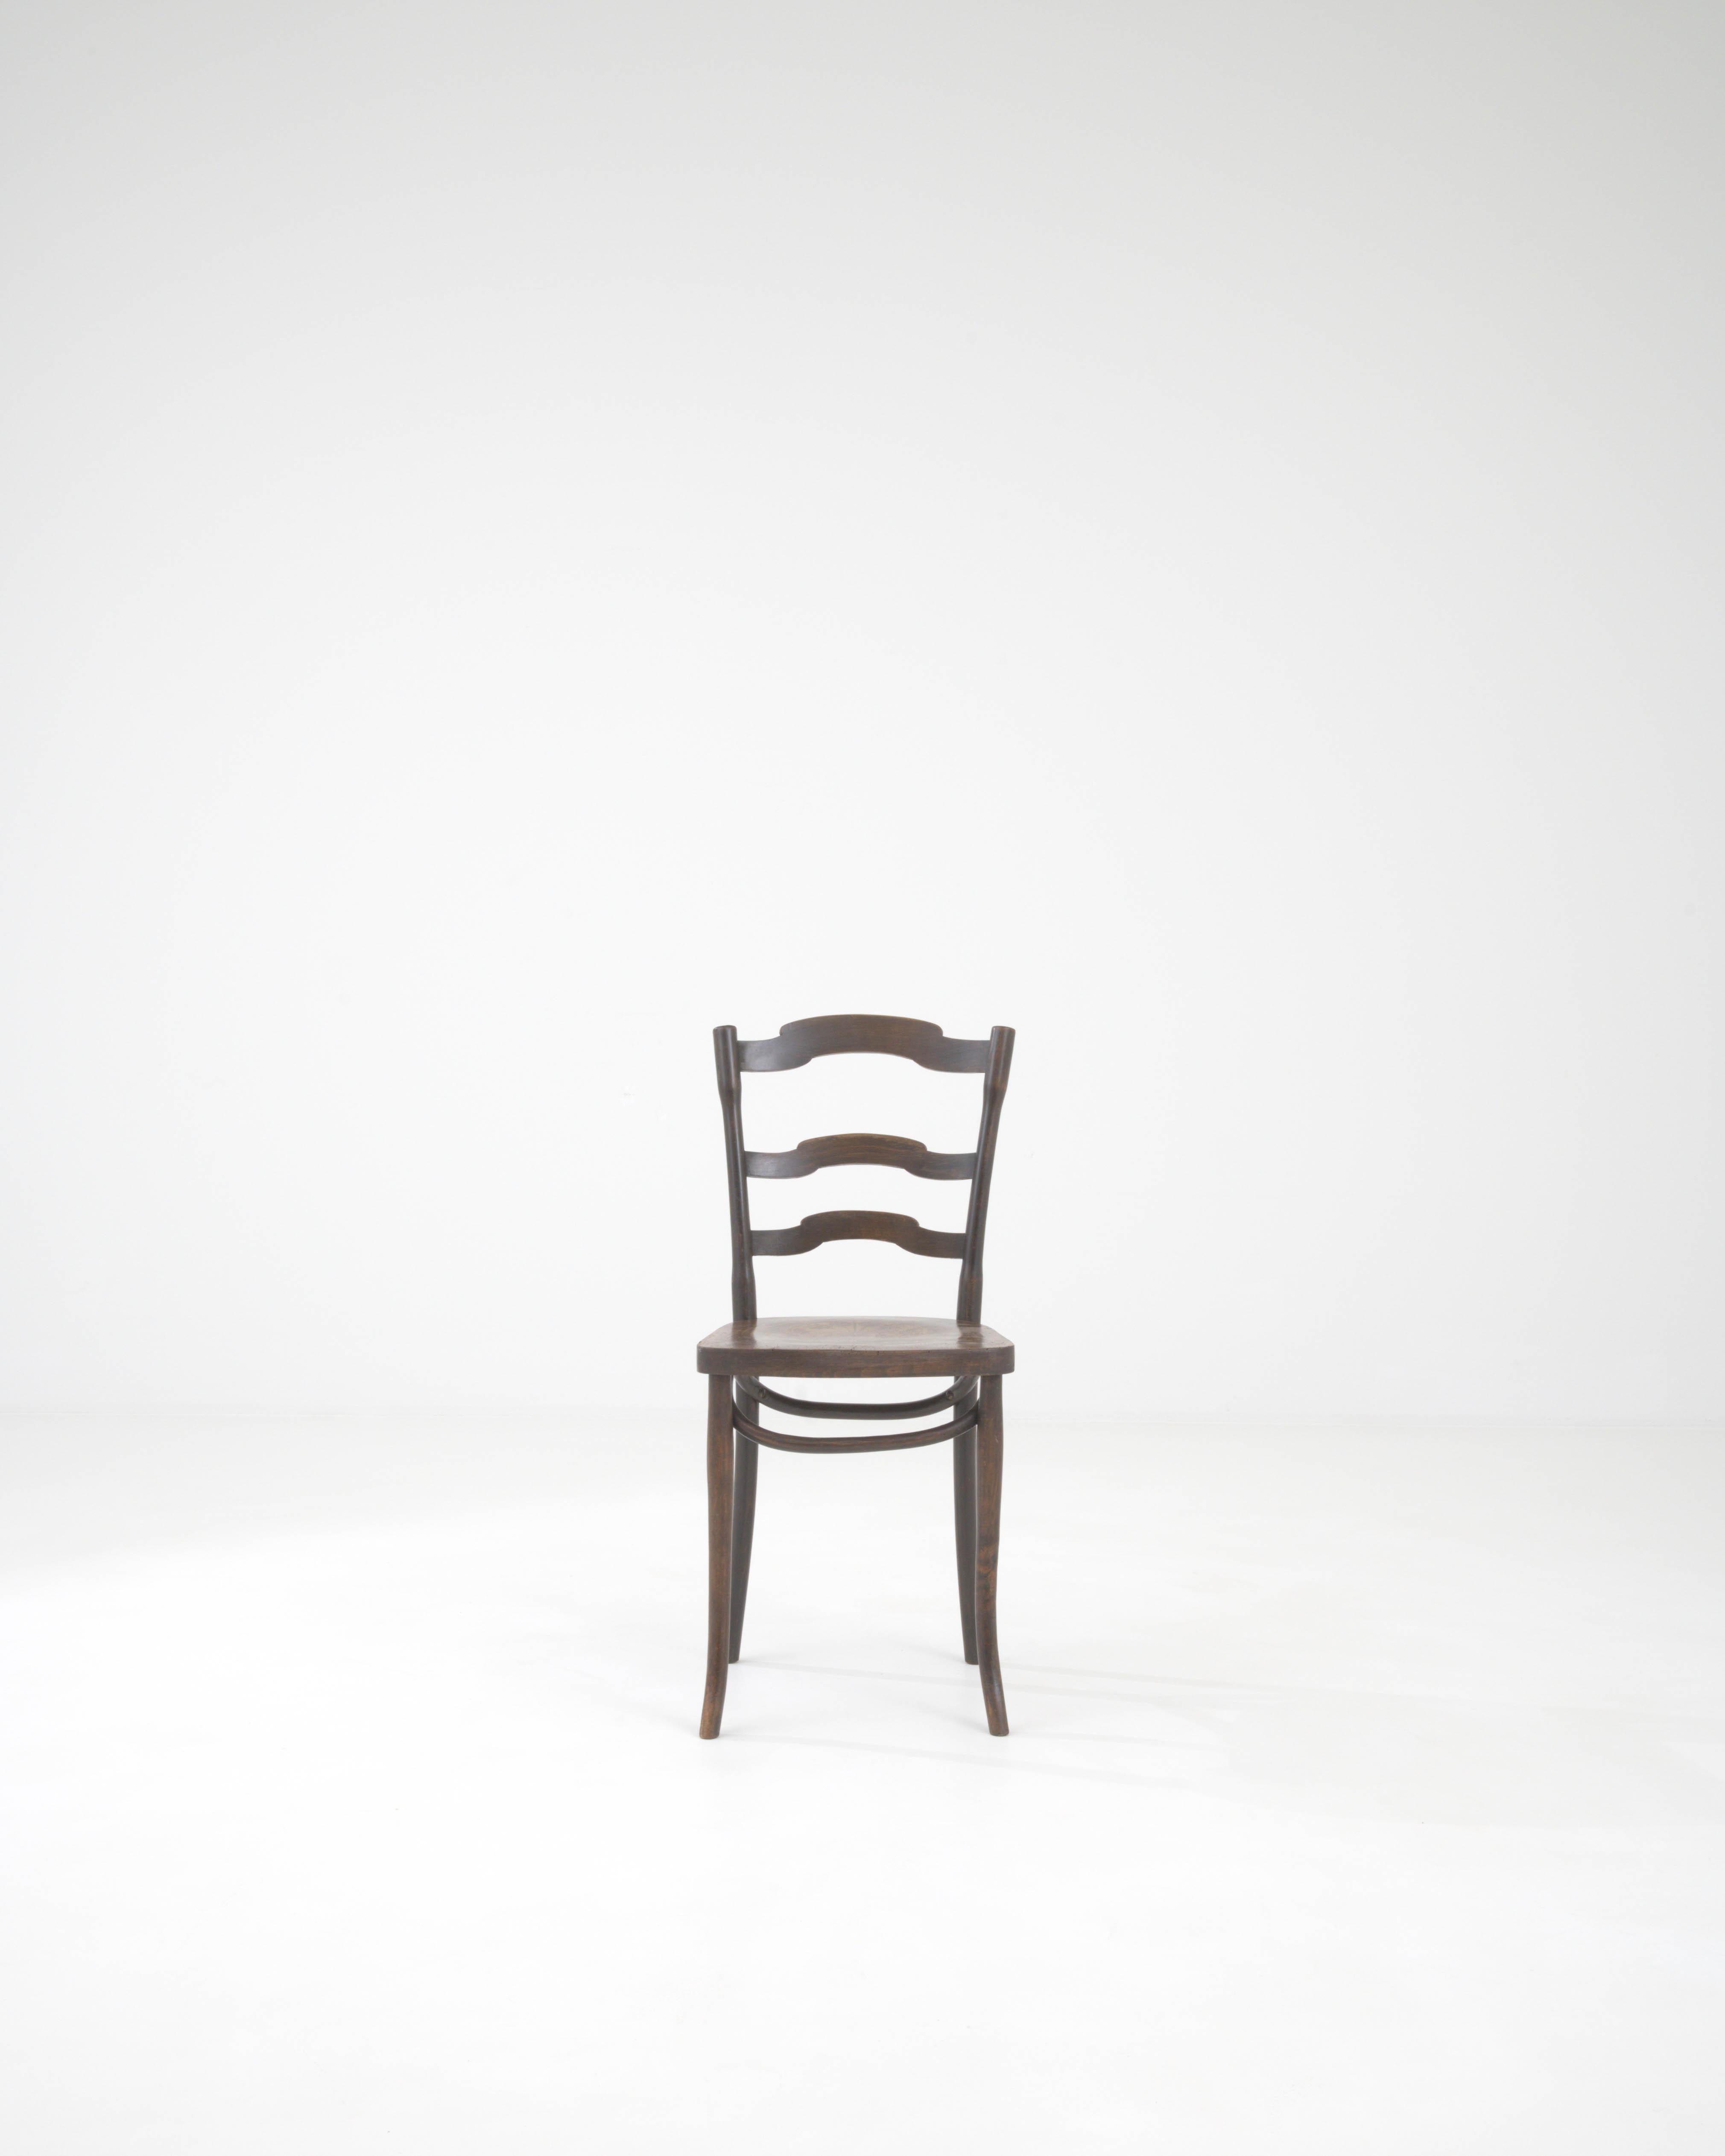 Remontez le temps avec cette exquise chaise de bistrot d'Europe centrale du XXe siècle, une pièce qui capture l'essence de la culture classique des cafés. Son ton de bois chaud et sombre et sa patine gracieusement vieillie racontent une histoire